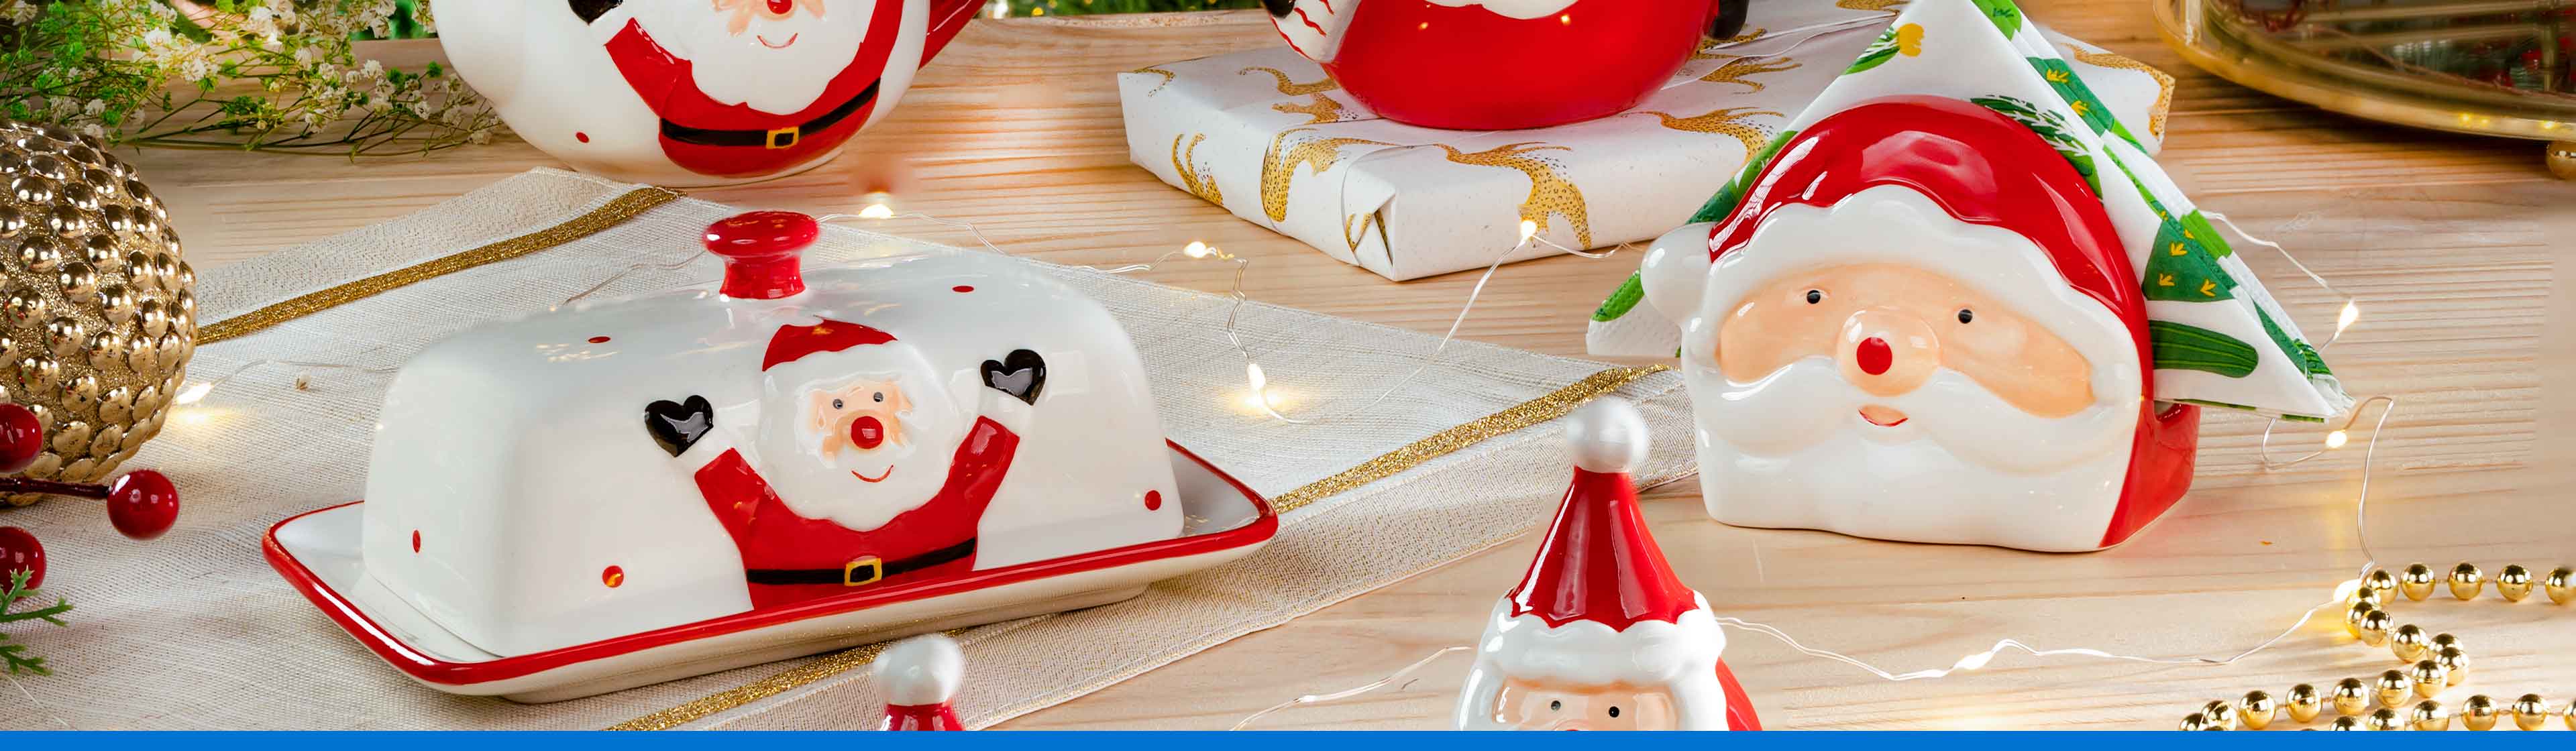 Elementos navideños para decorar la mesa